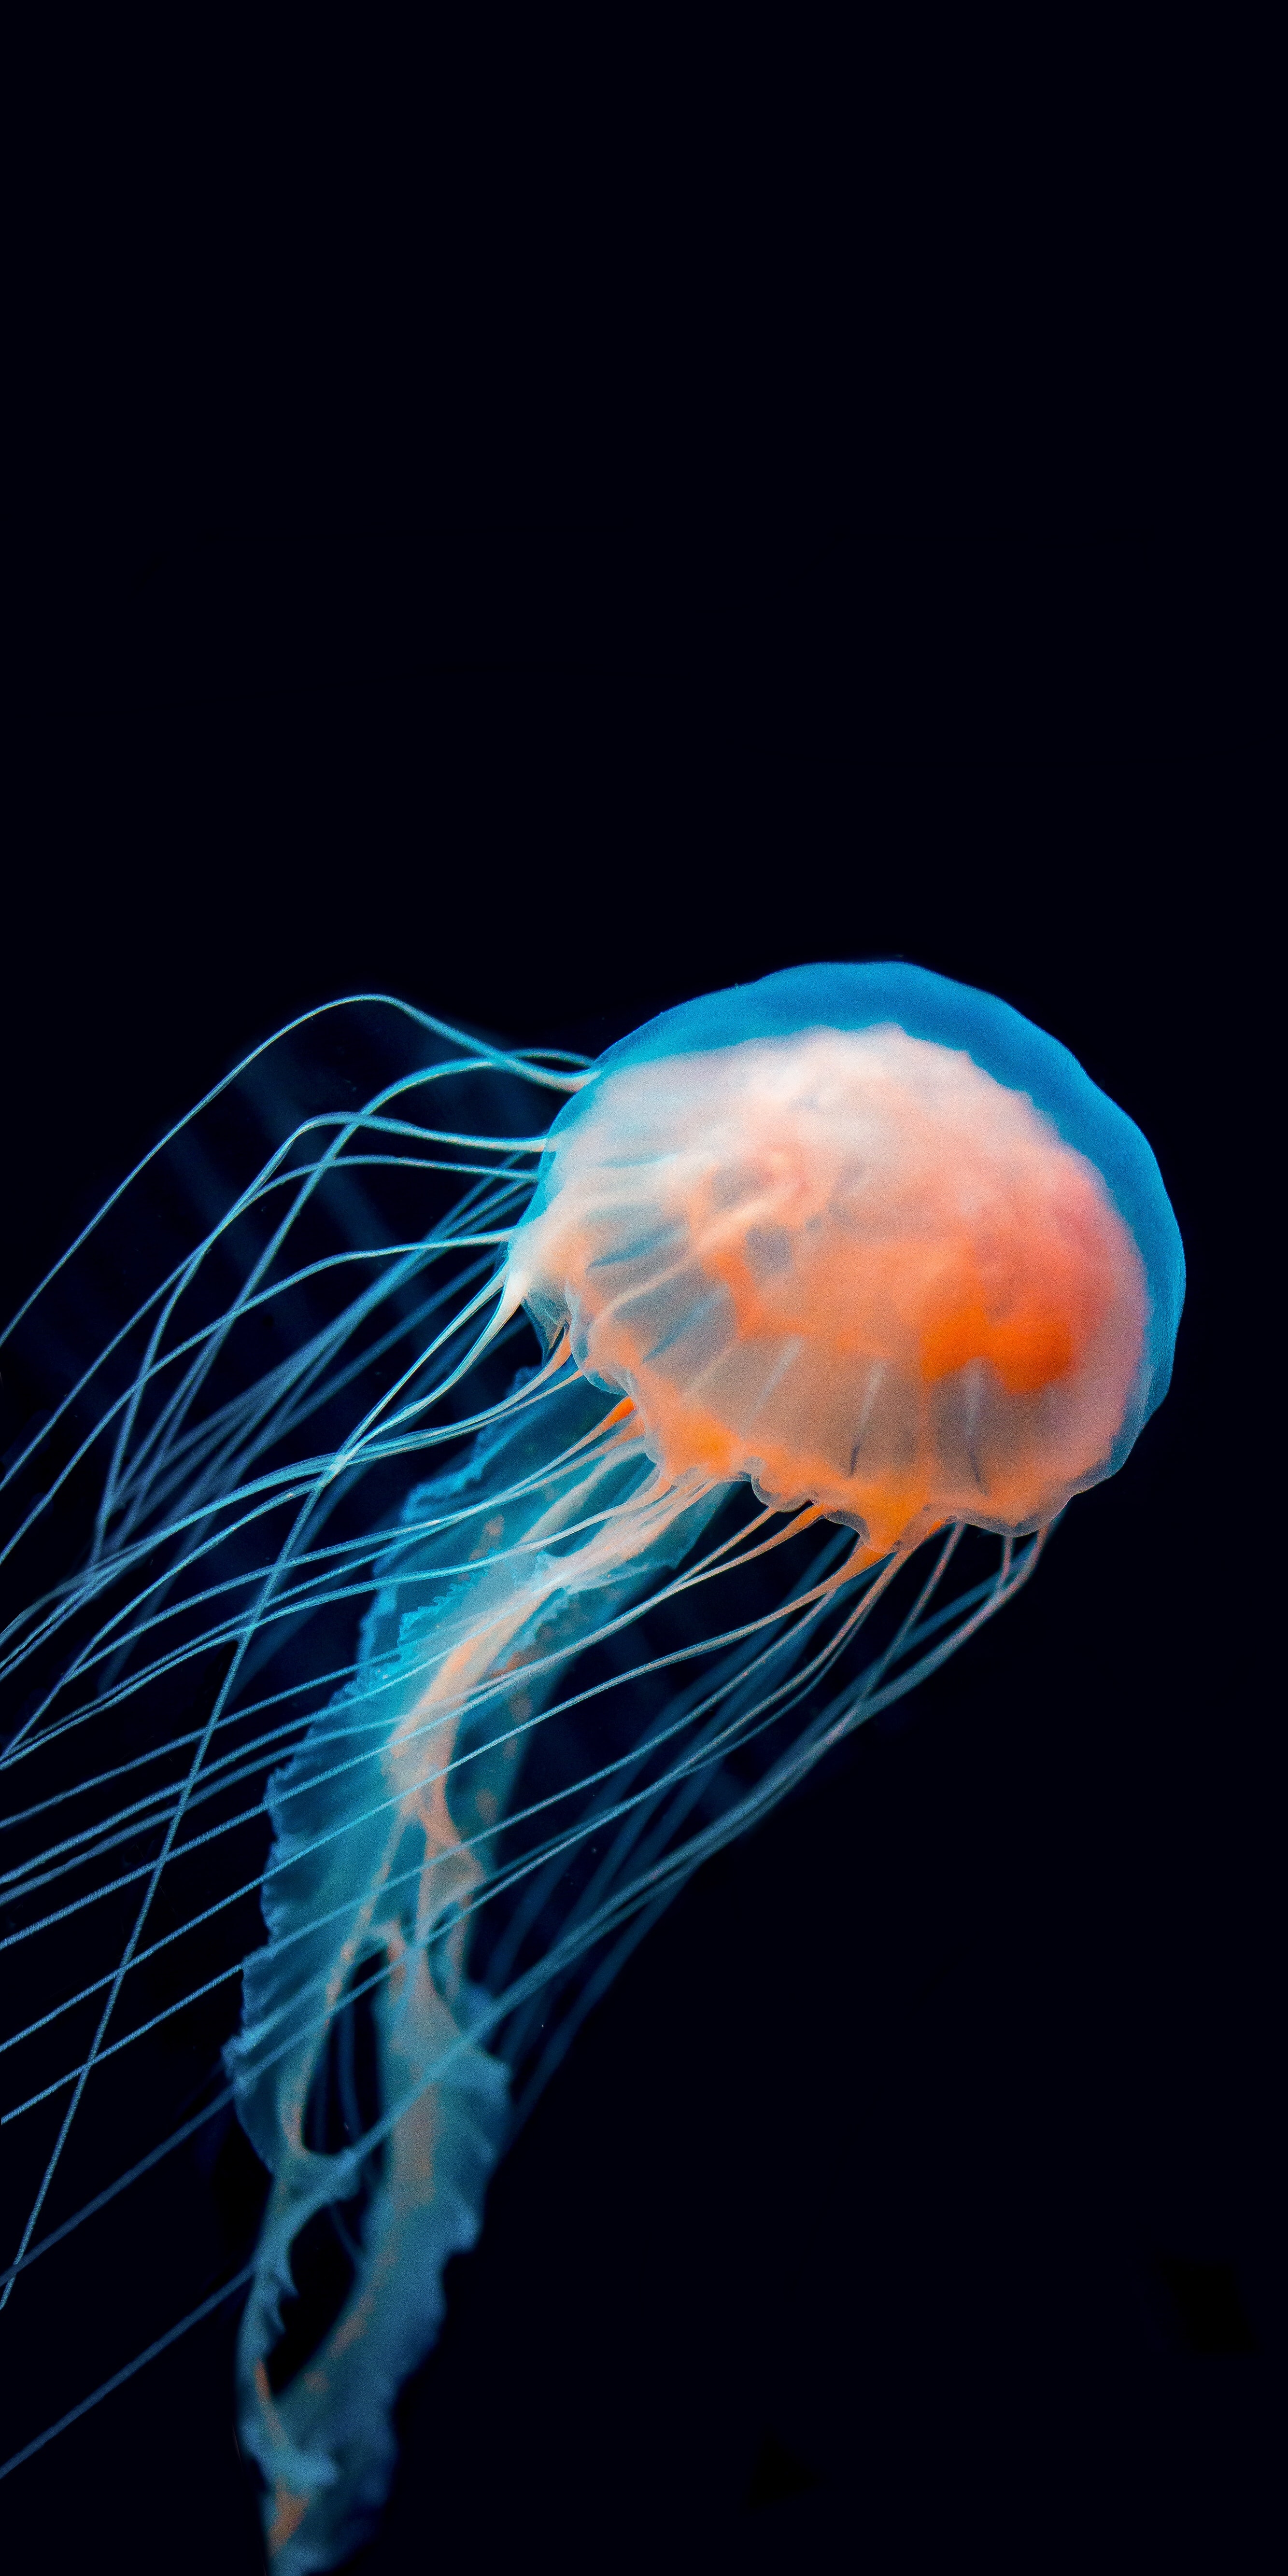 jellyfish, animals, dark, underwater world, tentacle